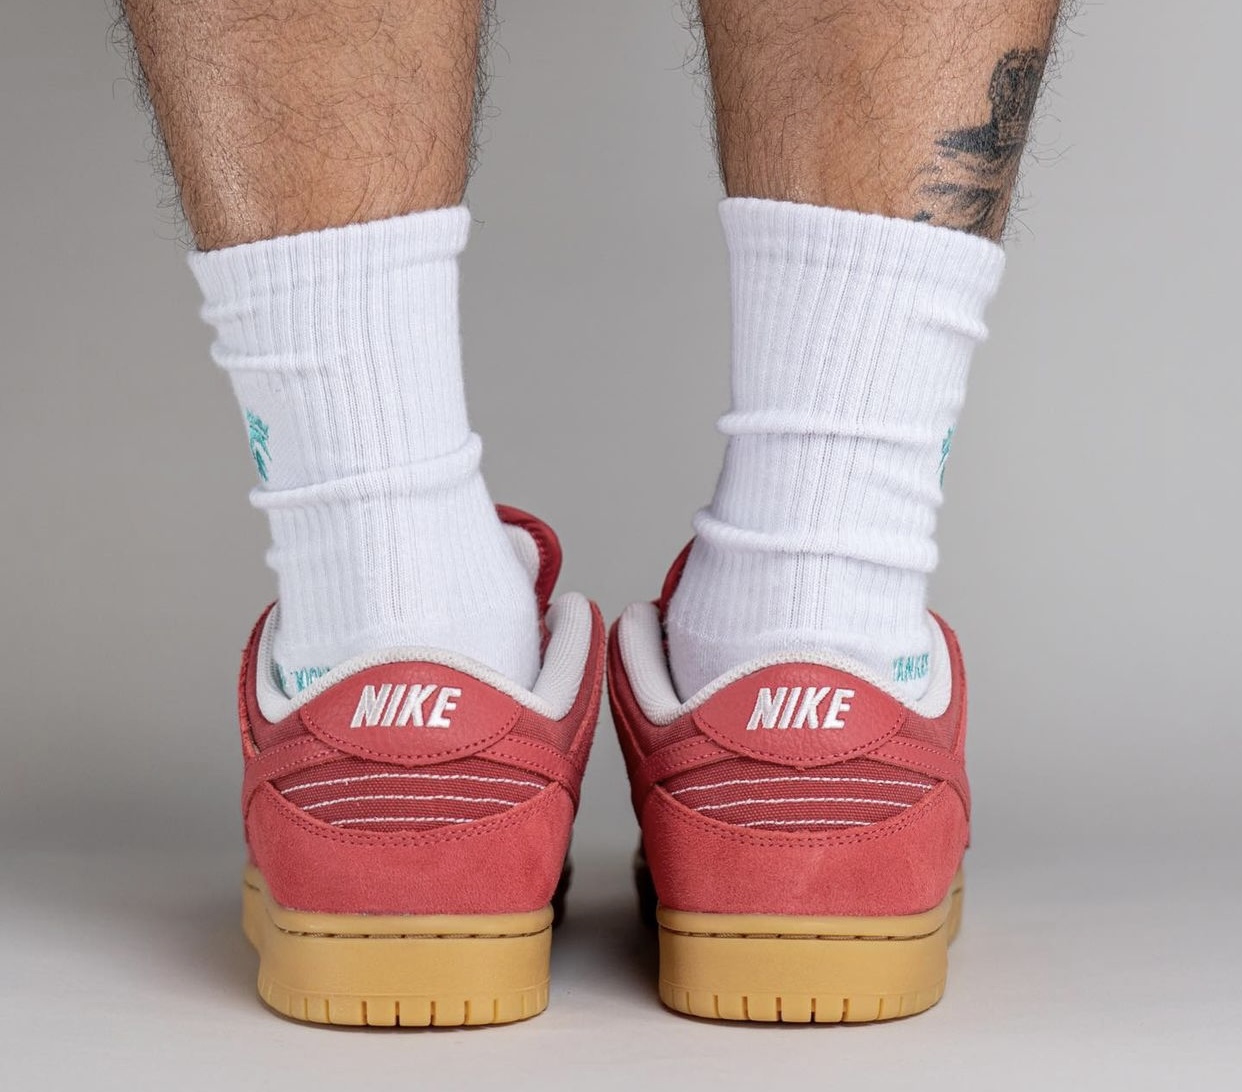 Nike SB Dunk Low Adobe DV5429 600 Release Date On Feet 7